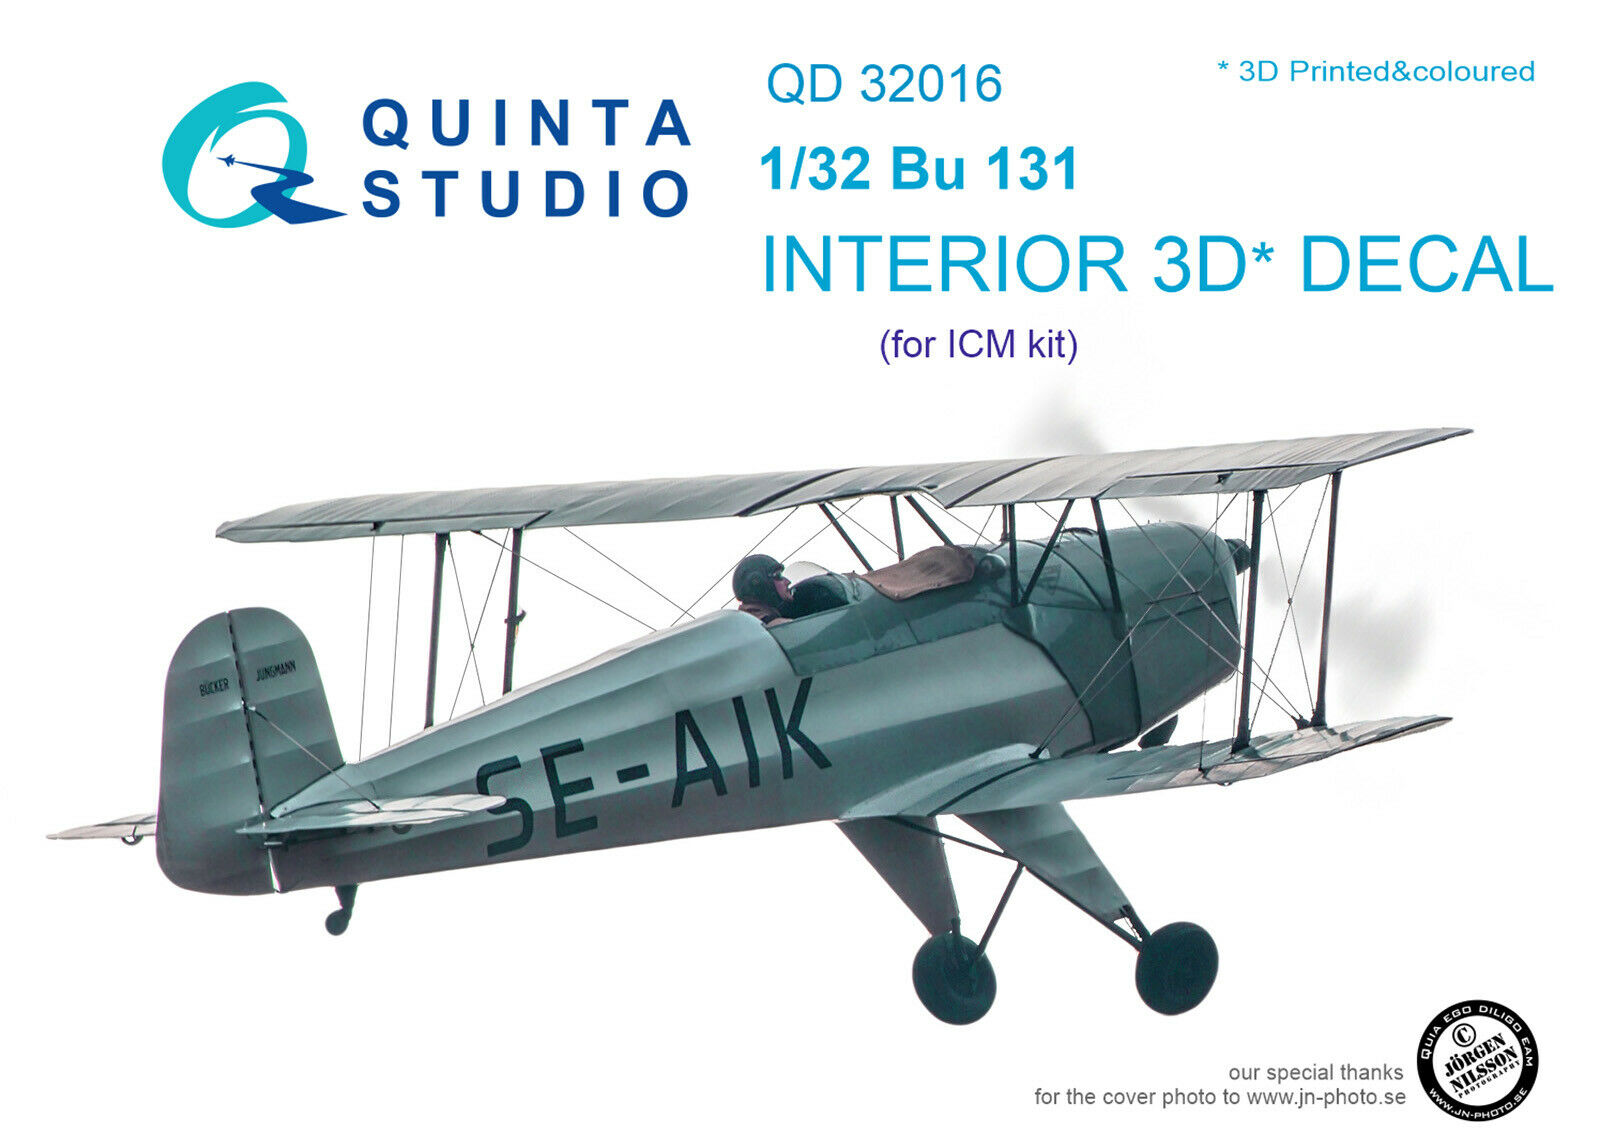 Quinta Qd32016 1/32  Bu 131 3d-printed & Coloured Interior (for Icm Kit)